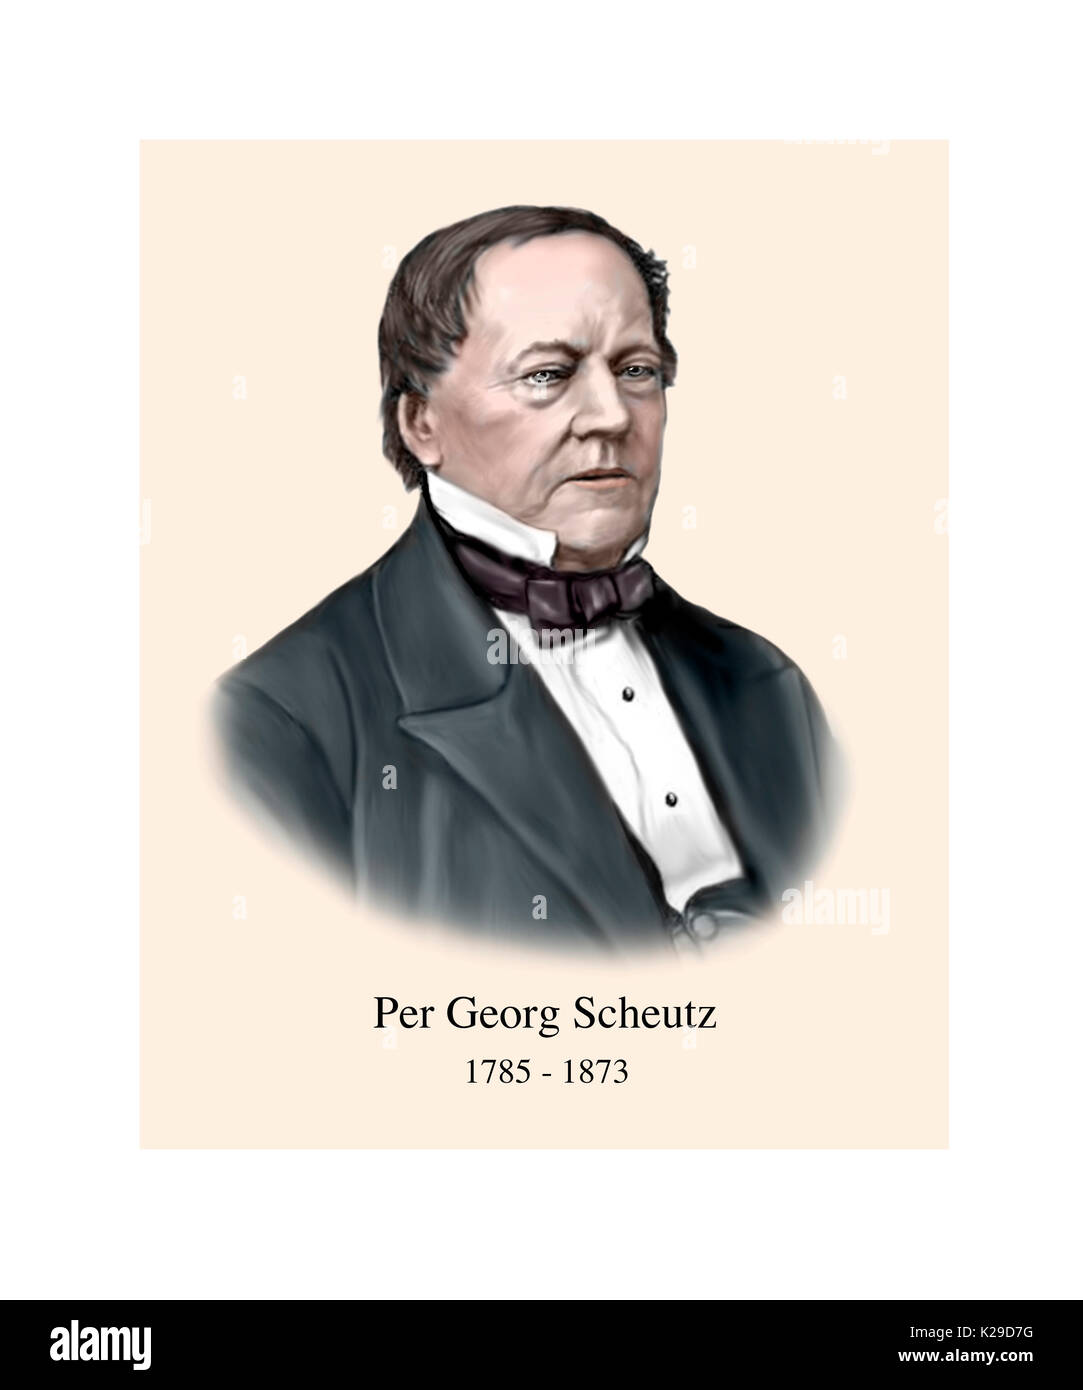 Par georg scheutz, 1785 - 1873, la technologie informatique suédois pioneer, avocat, traducteur, inventeur Banque D'Images